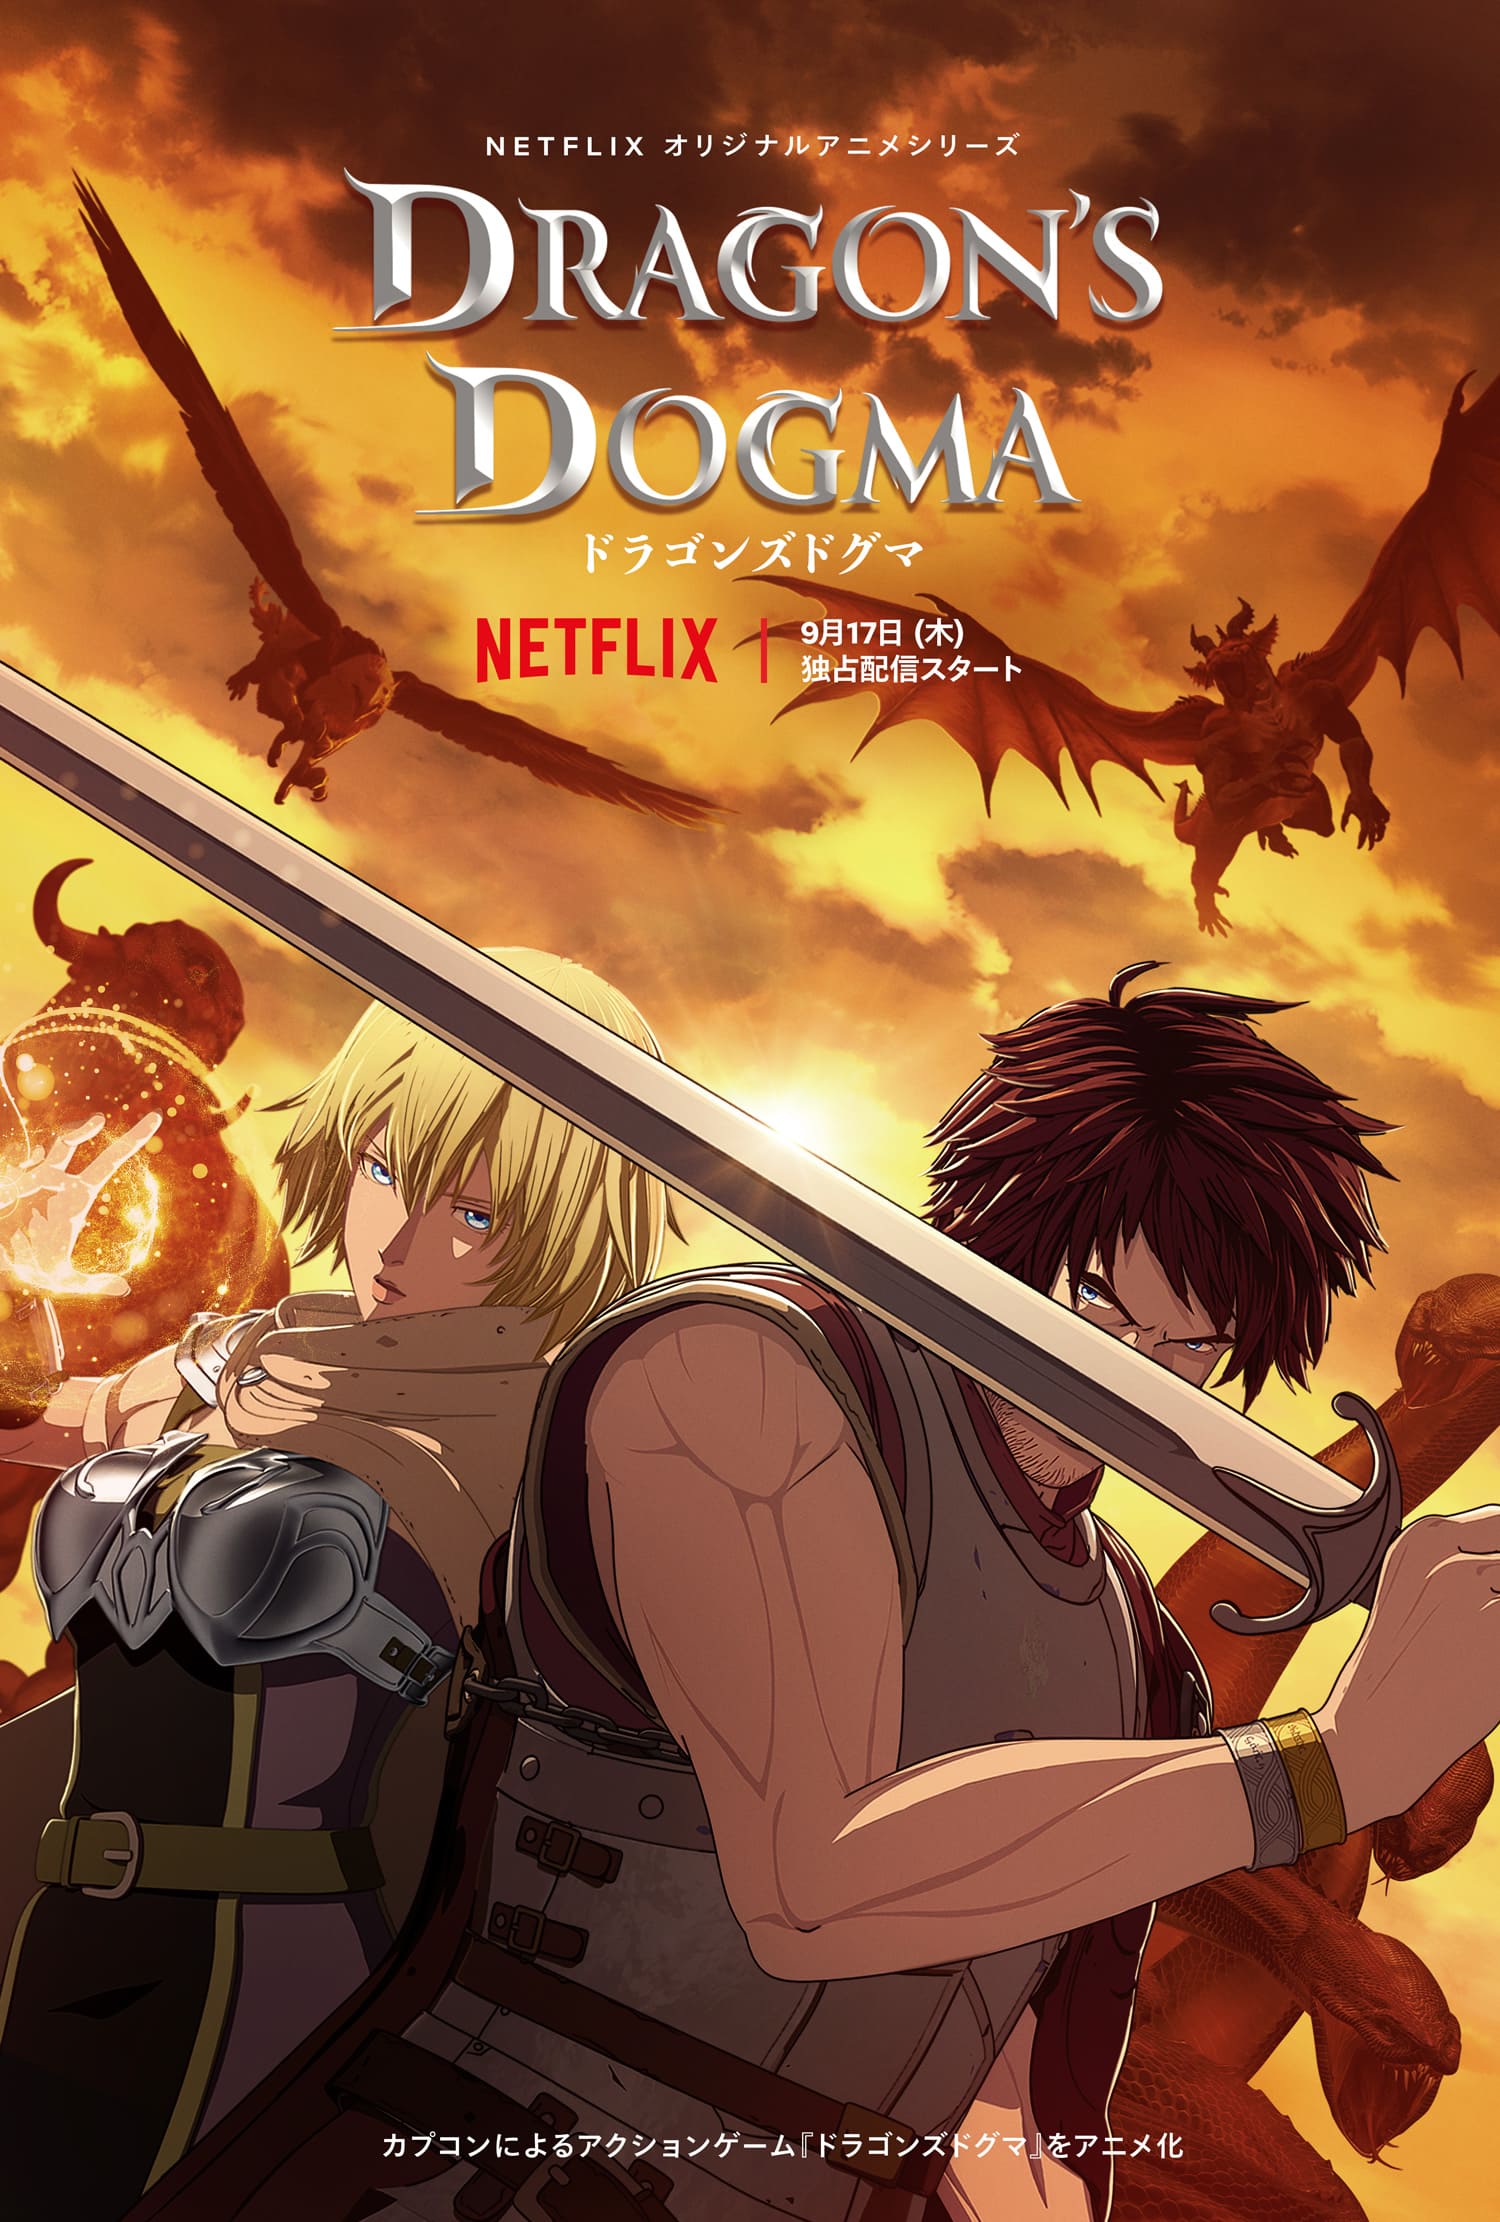 Dragons-Dogma-Anime_07-14-20 (7)